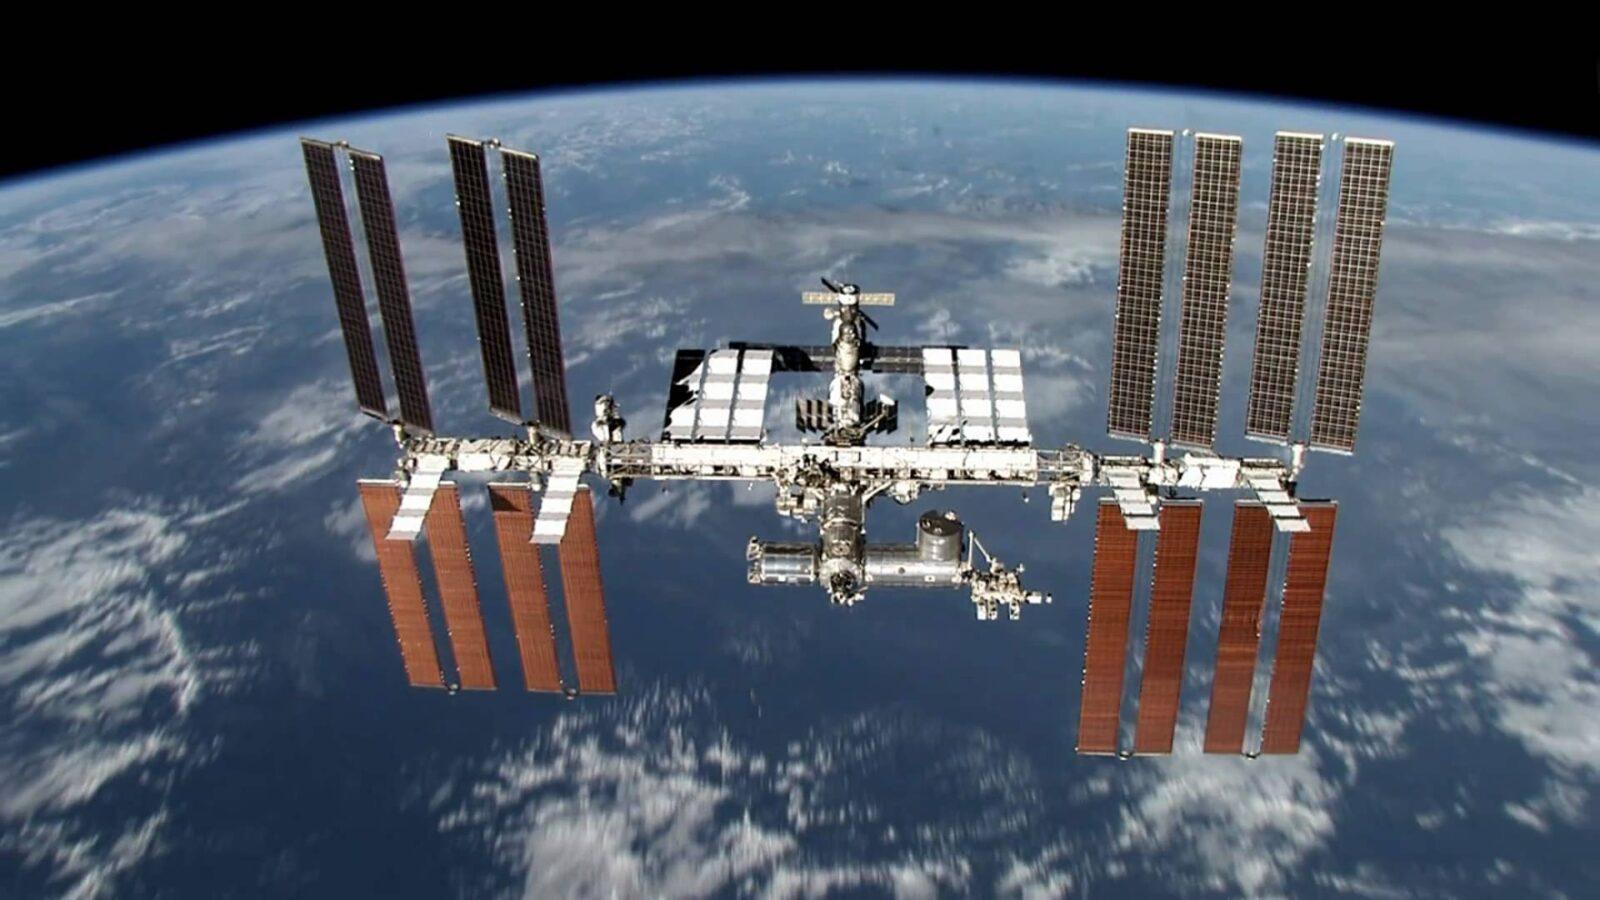 uluslararasi uzay istasyonu nedir amaclari nelerdir maksatbilgi